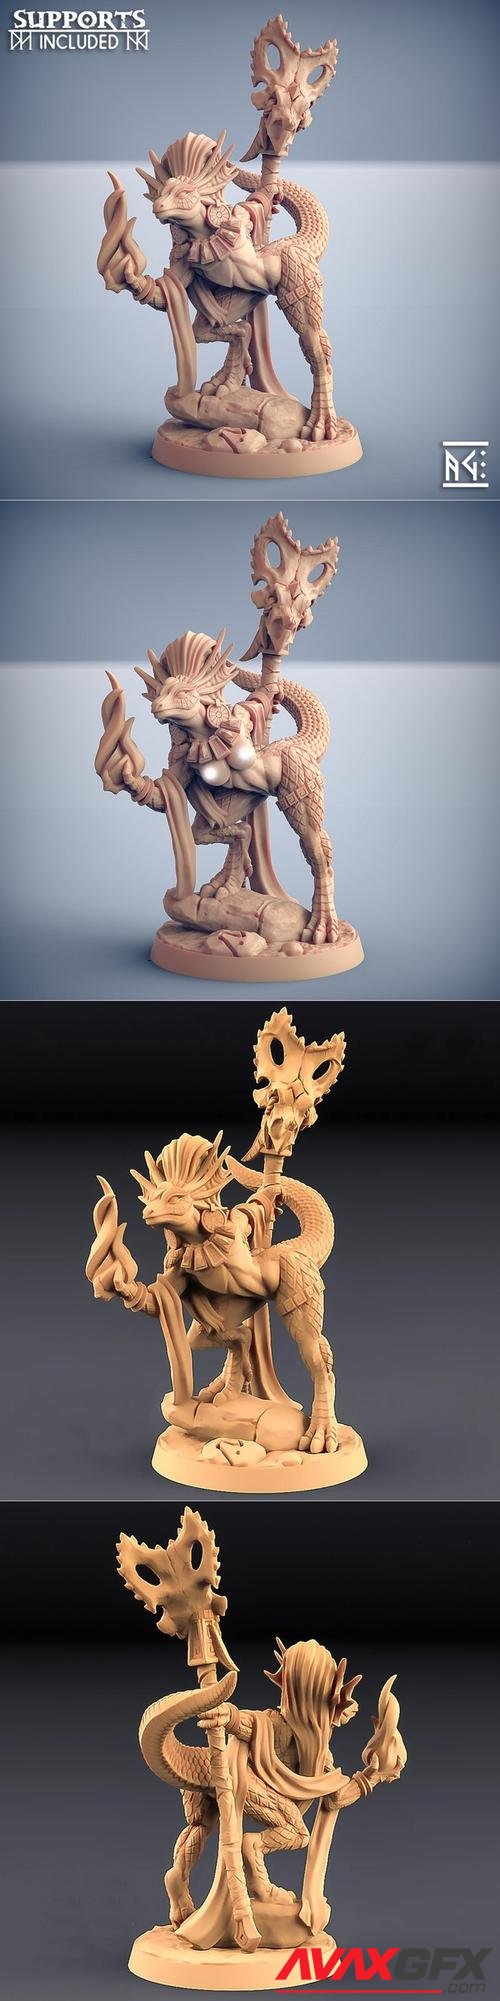 Coaxoch the Duchess Lizards Beauty 3D Print » AVAXGFX